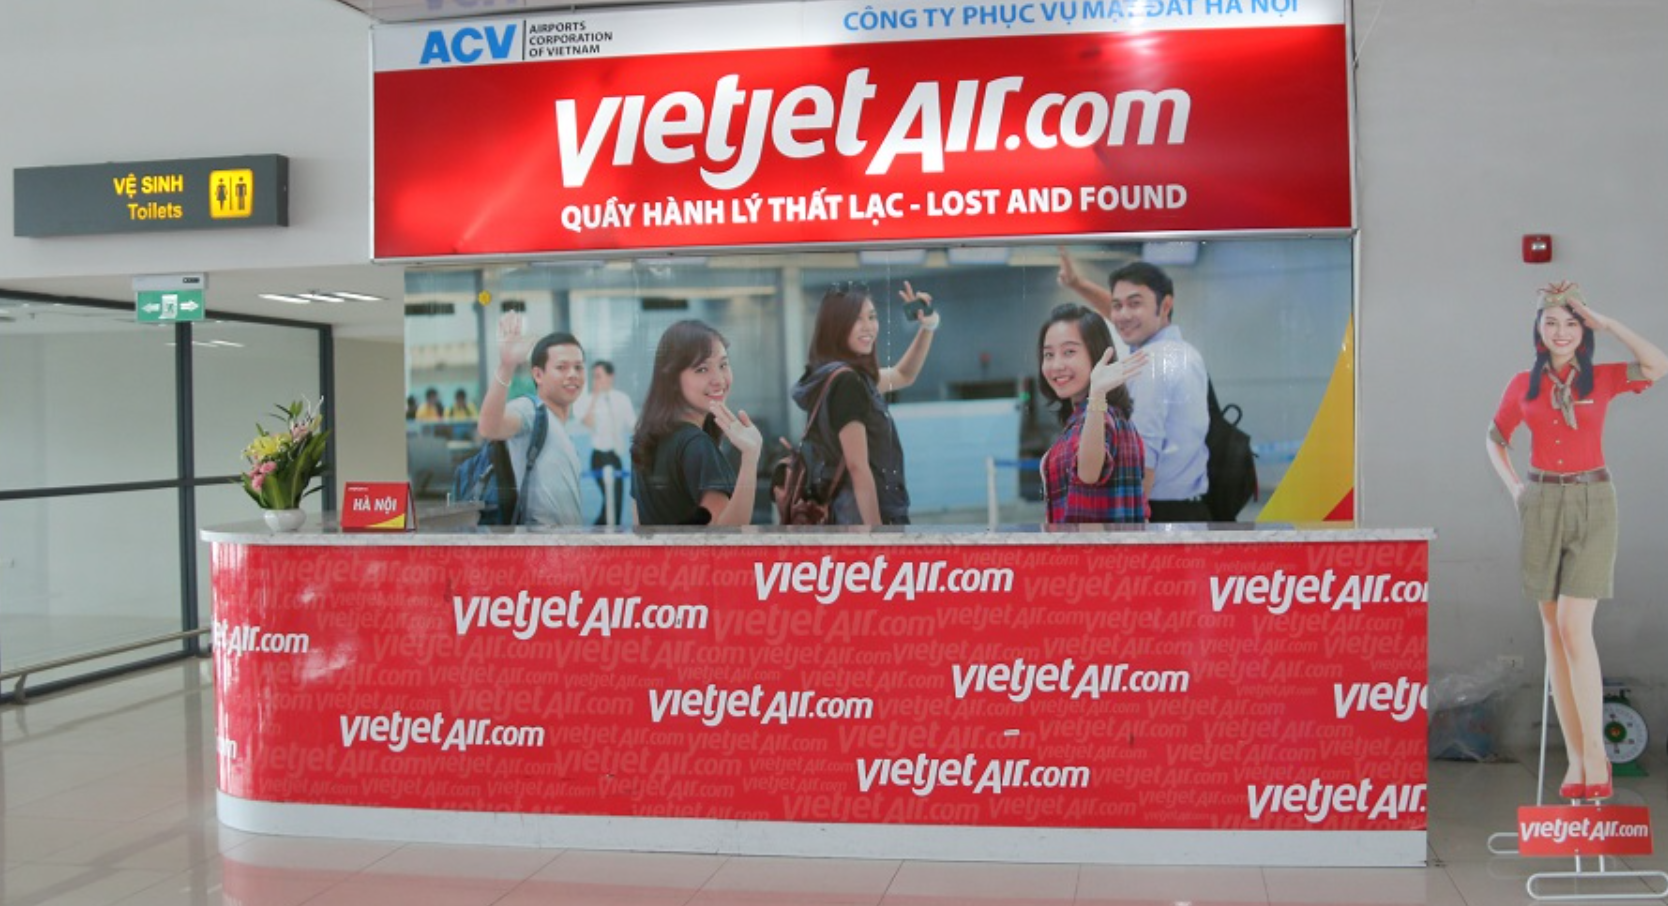 Liên hệ tìm hành lý thất lạc hãng Vietjet Air